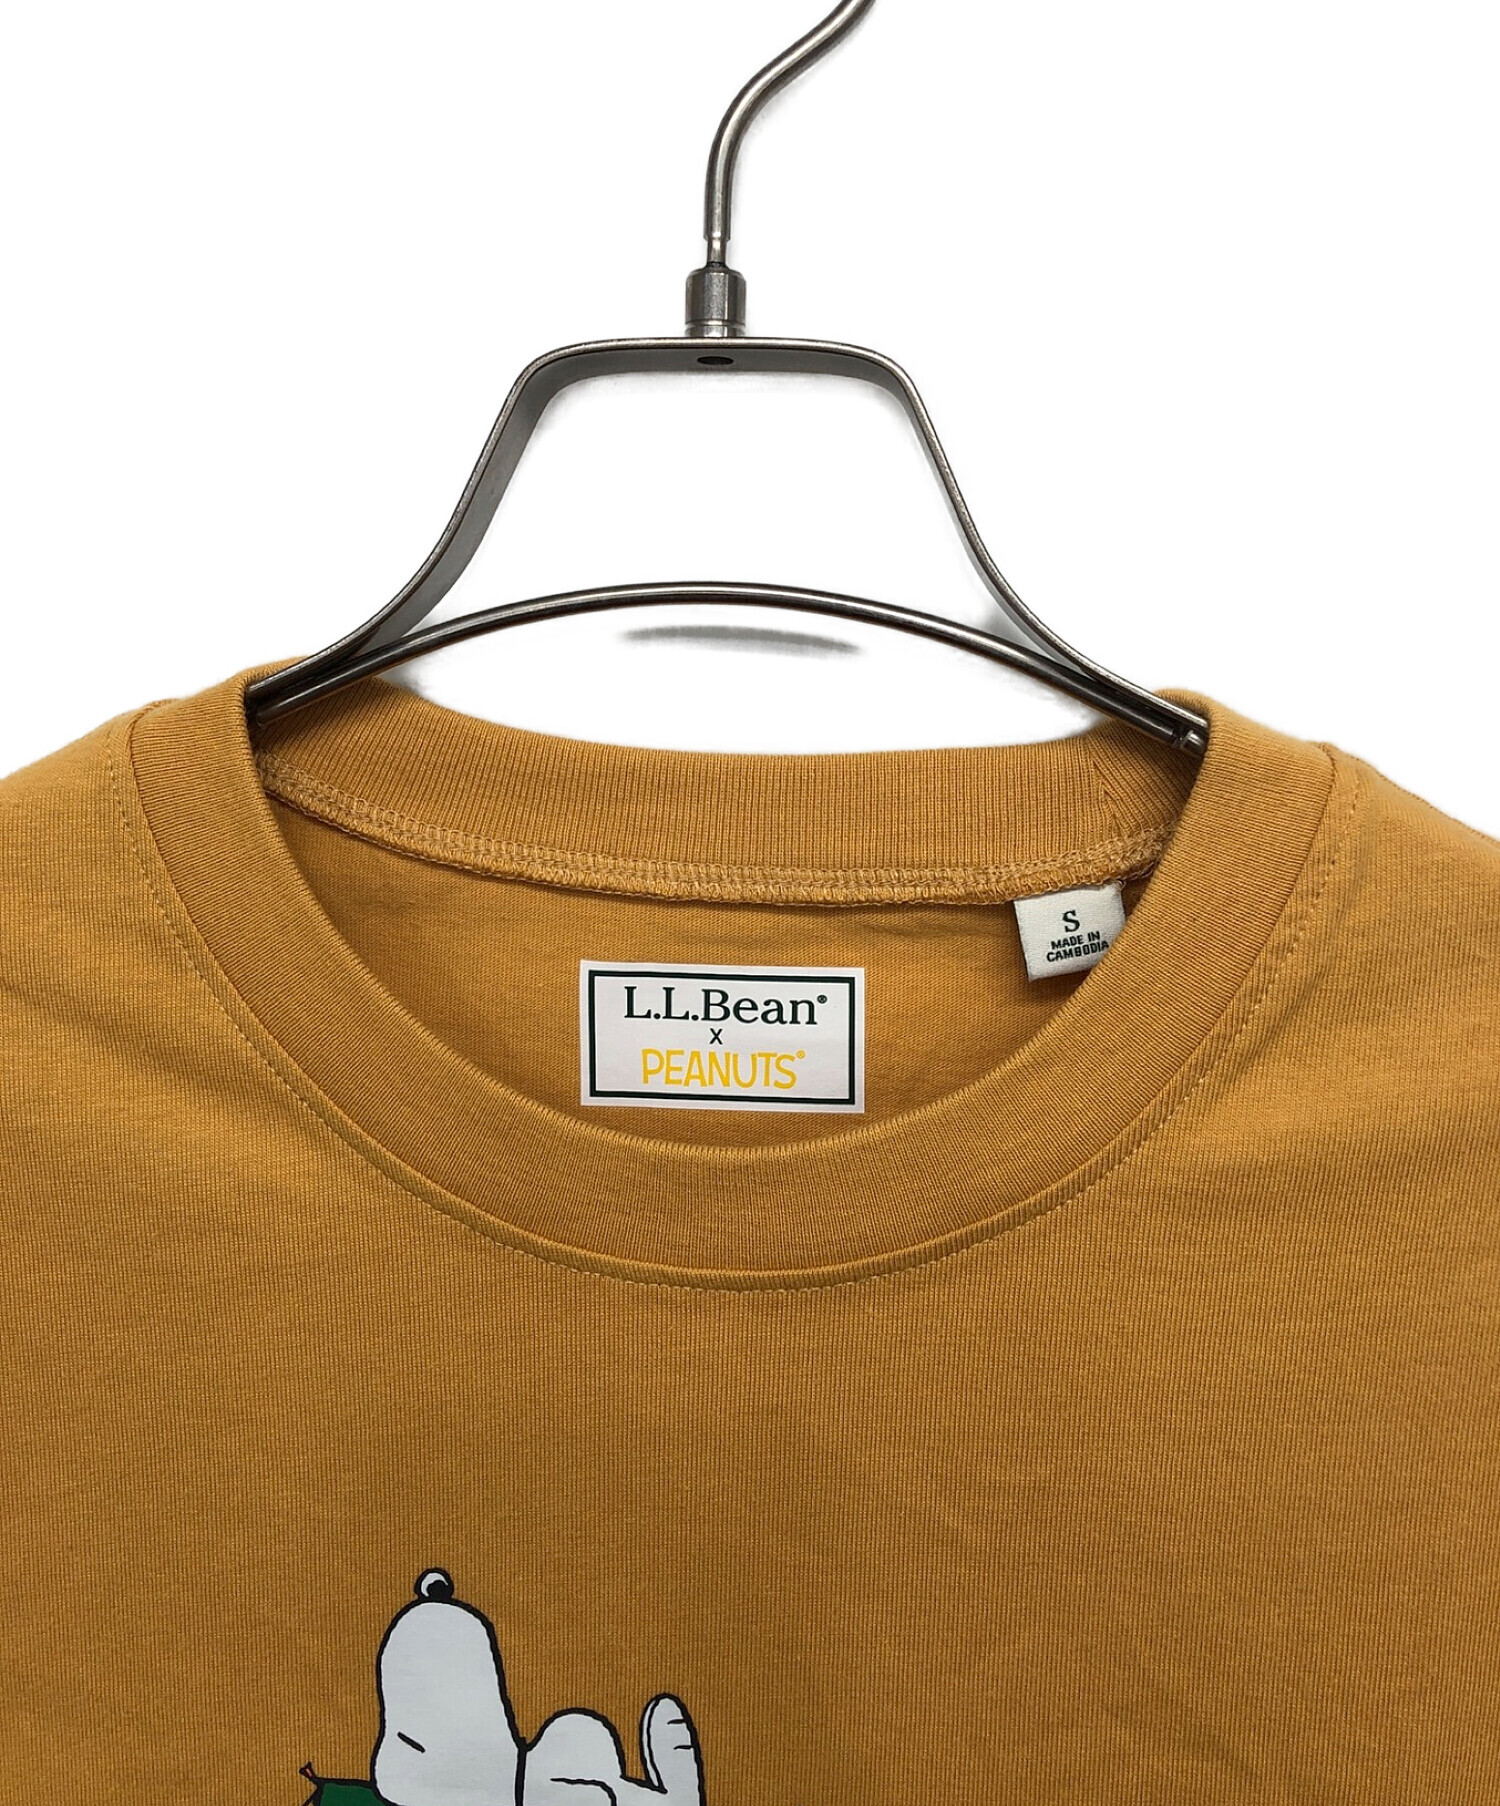 L.L.Bean (エルエルビーン) PEANUTS (ピーナッツ) Tシャツ イエロー サイズ:S